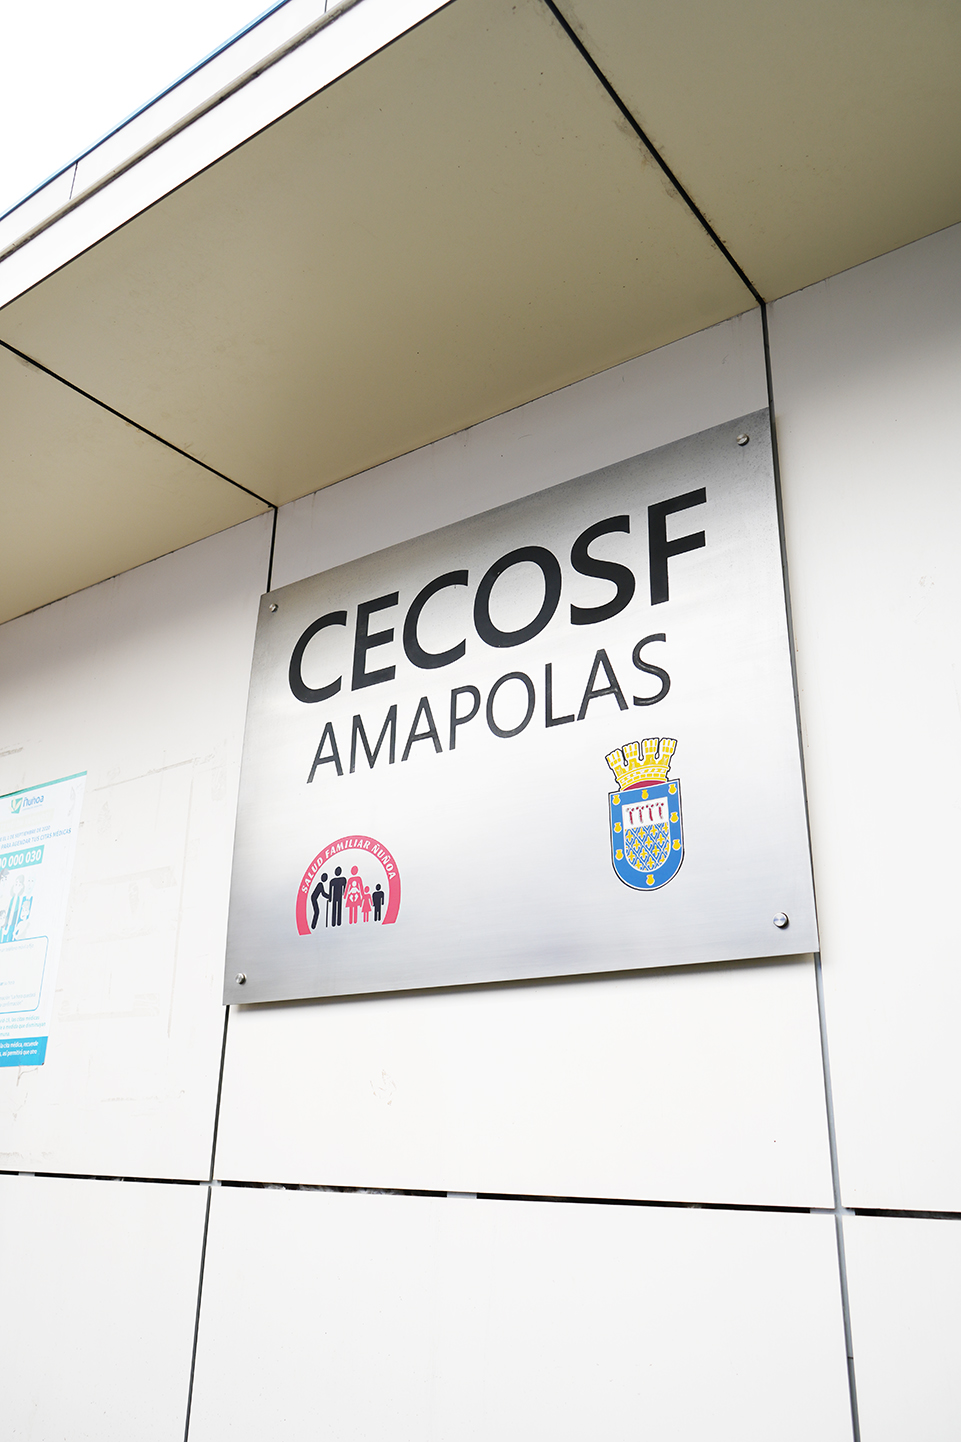 CECOSF Amapolas